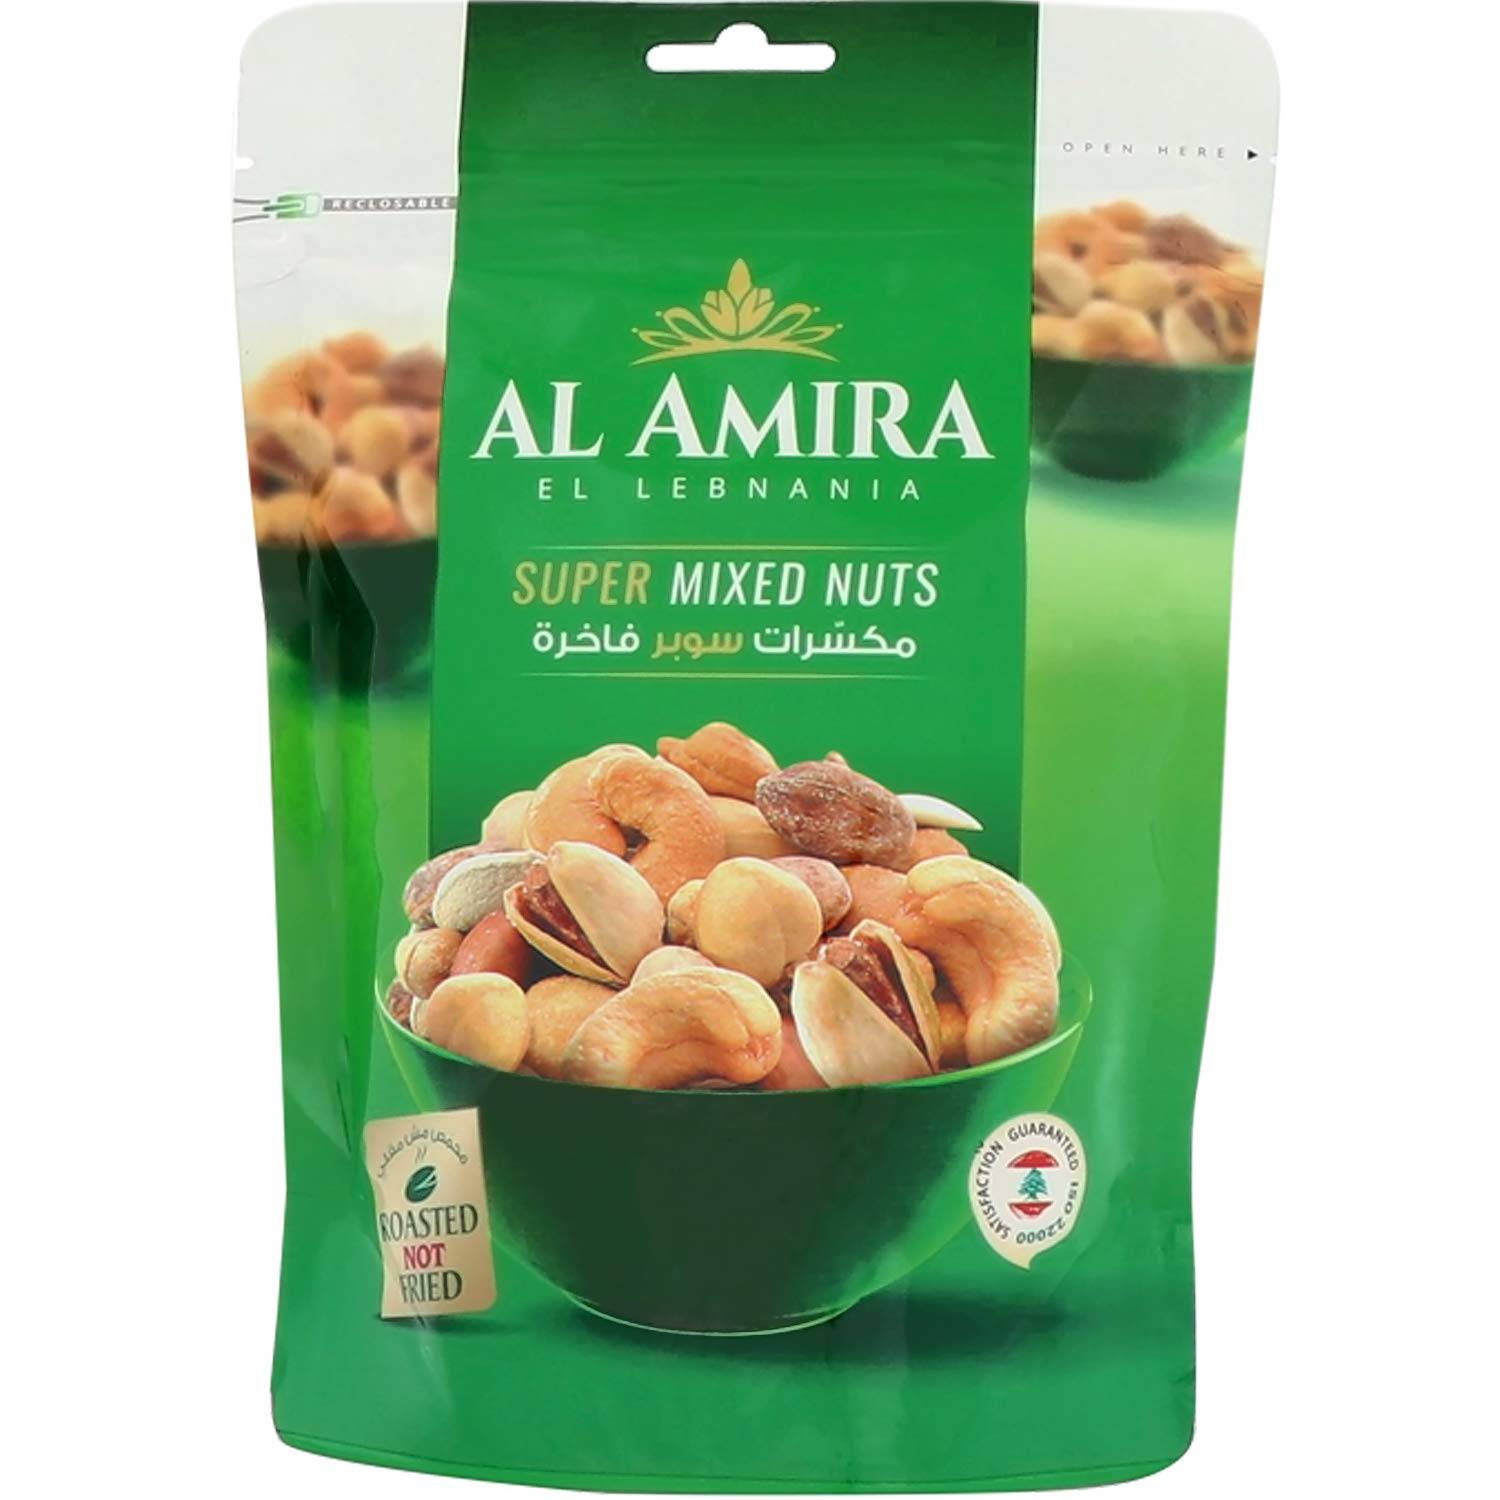 AL AMIRA Super Mixed Nuts, 300g.